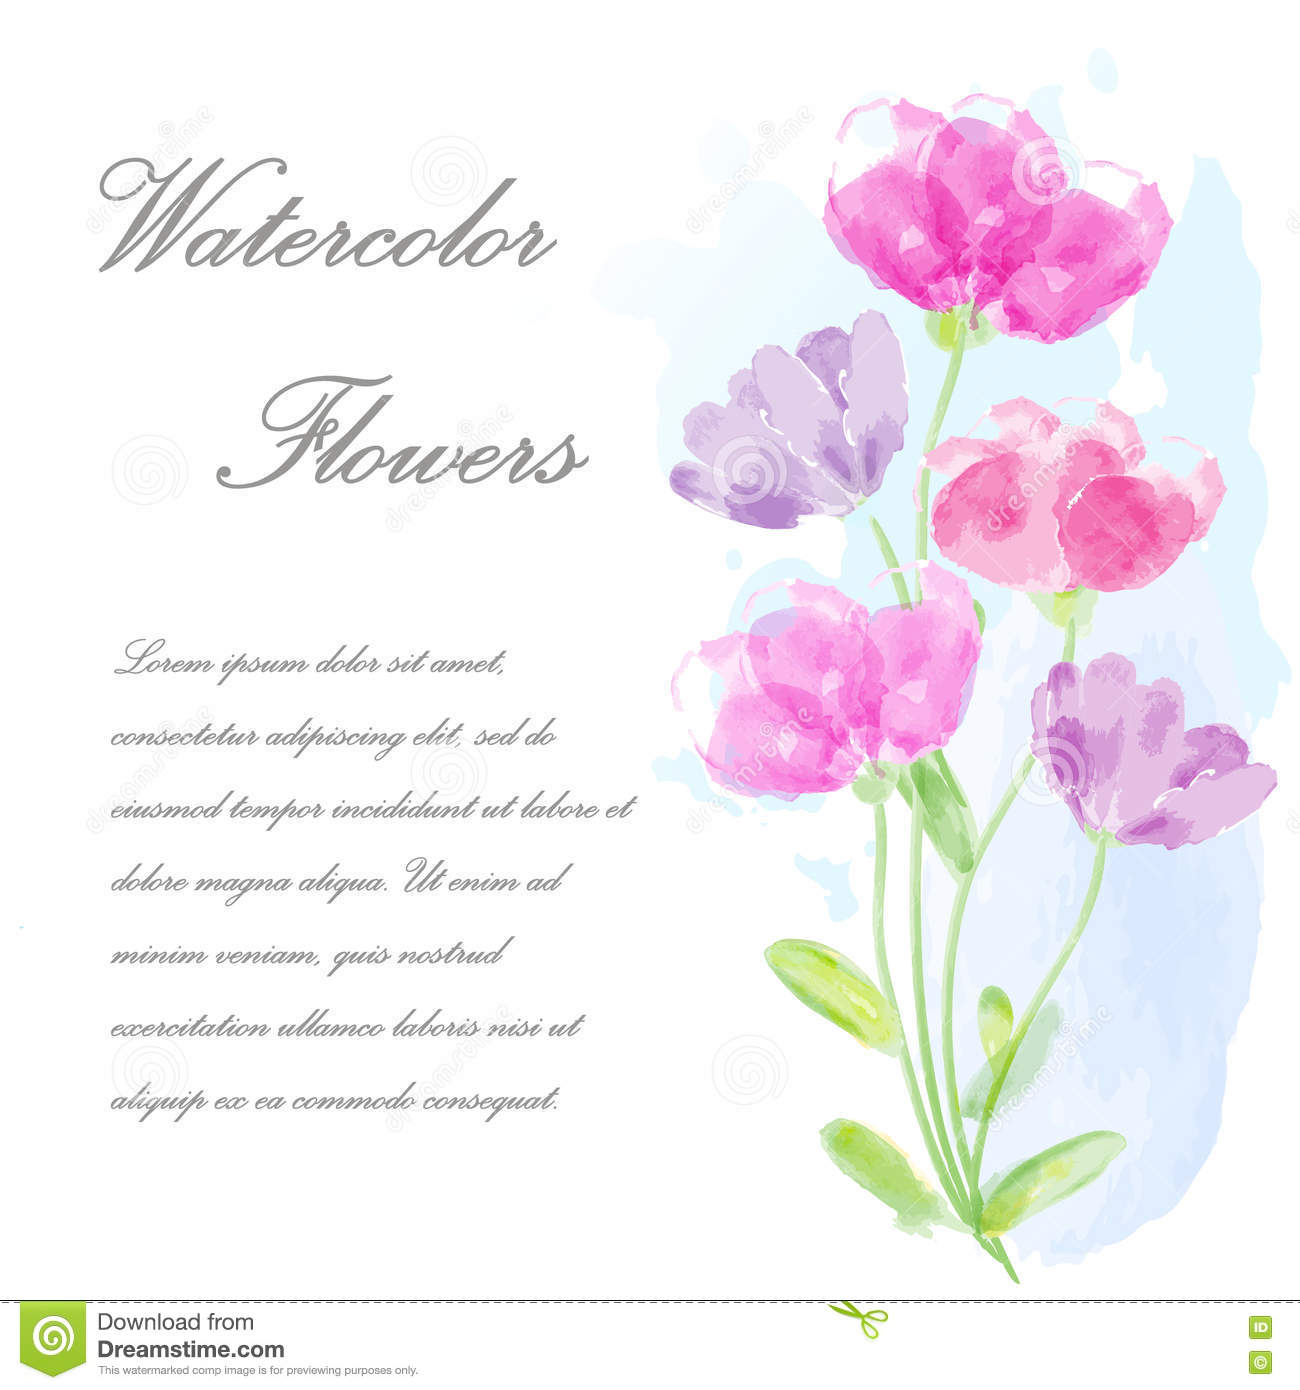 Carte d'invitation anniversaire avec des fleurs